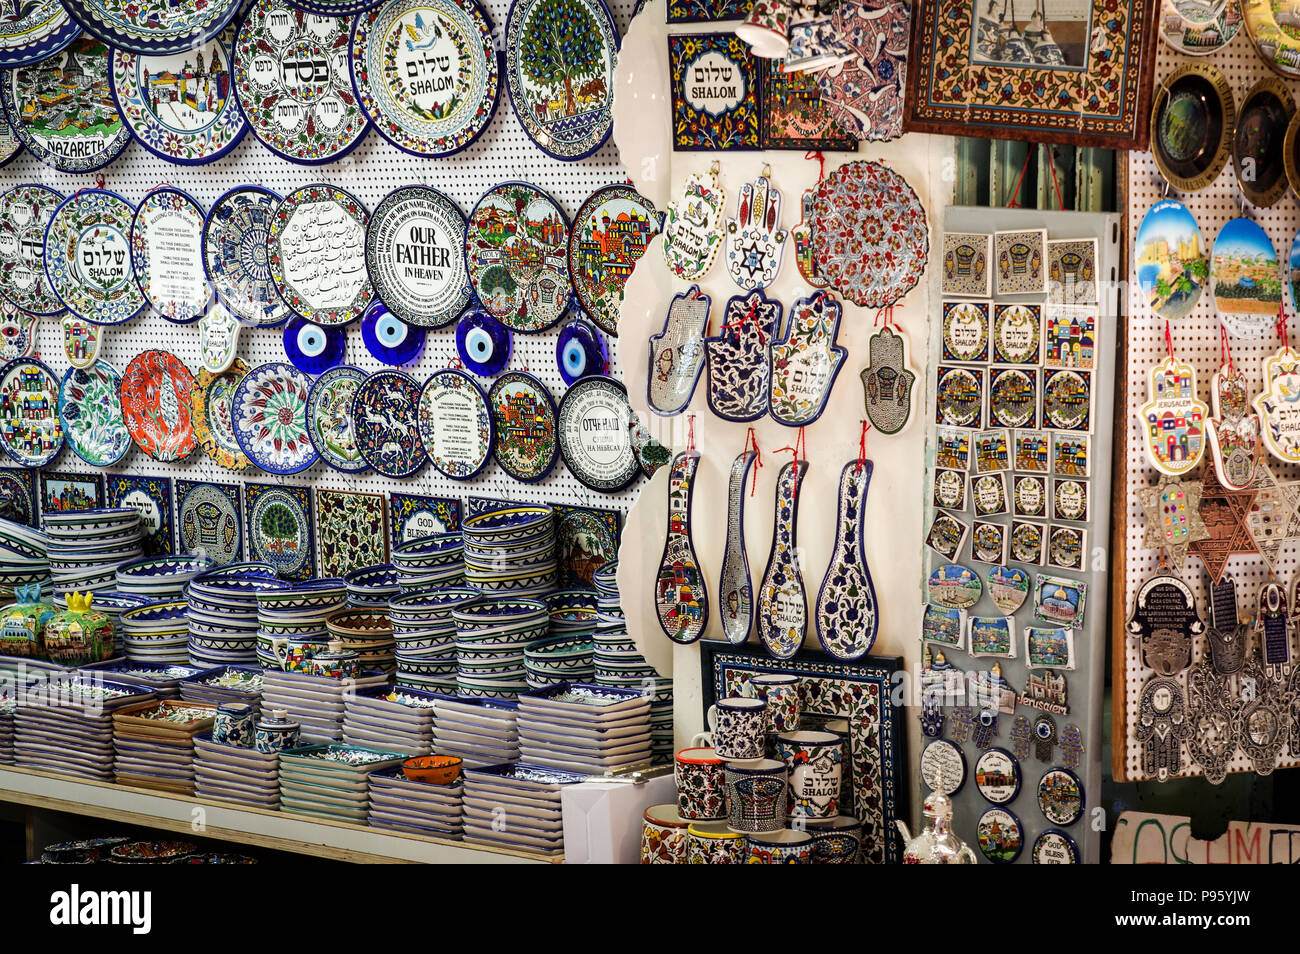 Pressione di stallo di Souvenir vendita israeliano tradizionali ceramiche e terrecotte nel mercato arabo - Gerusalemme, Israele Foto Stock